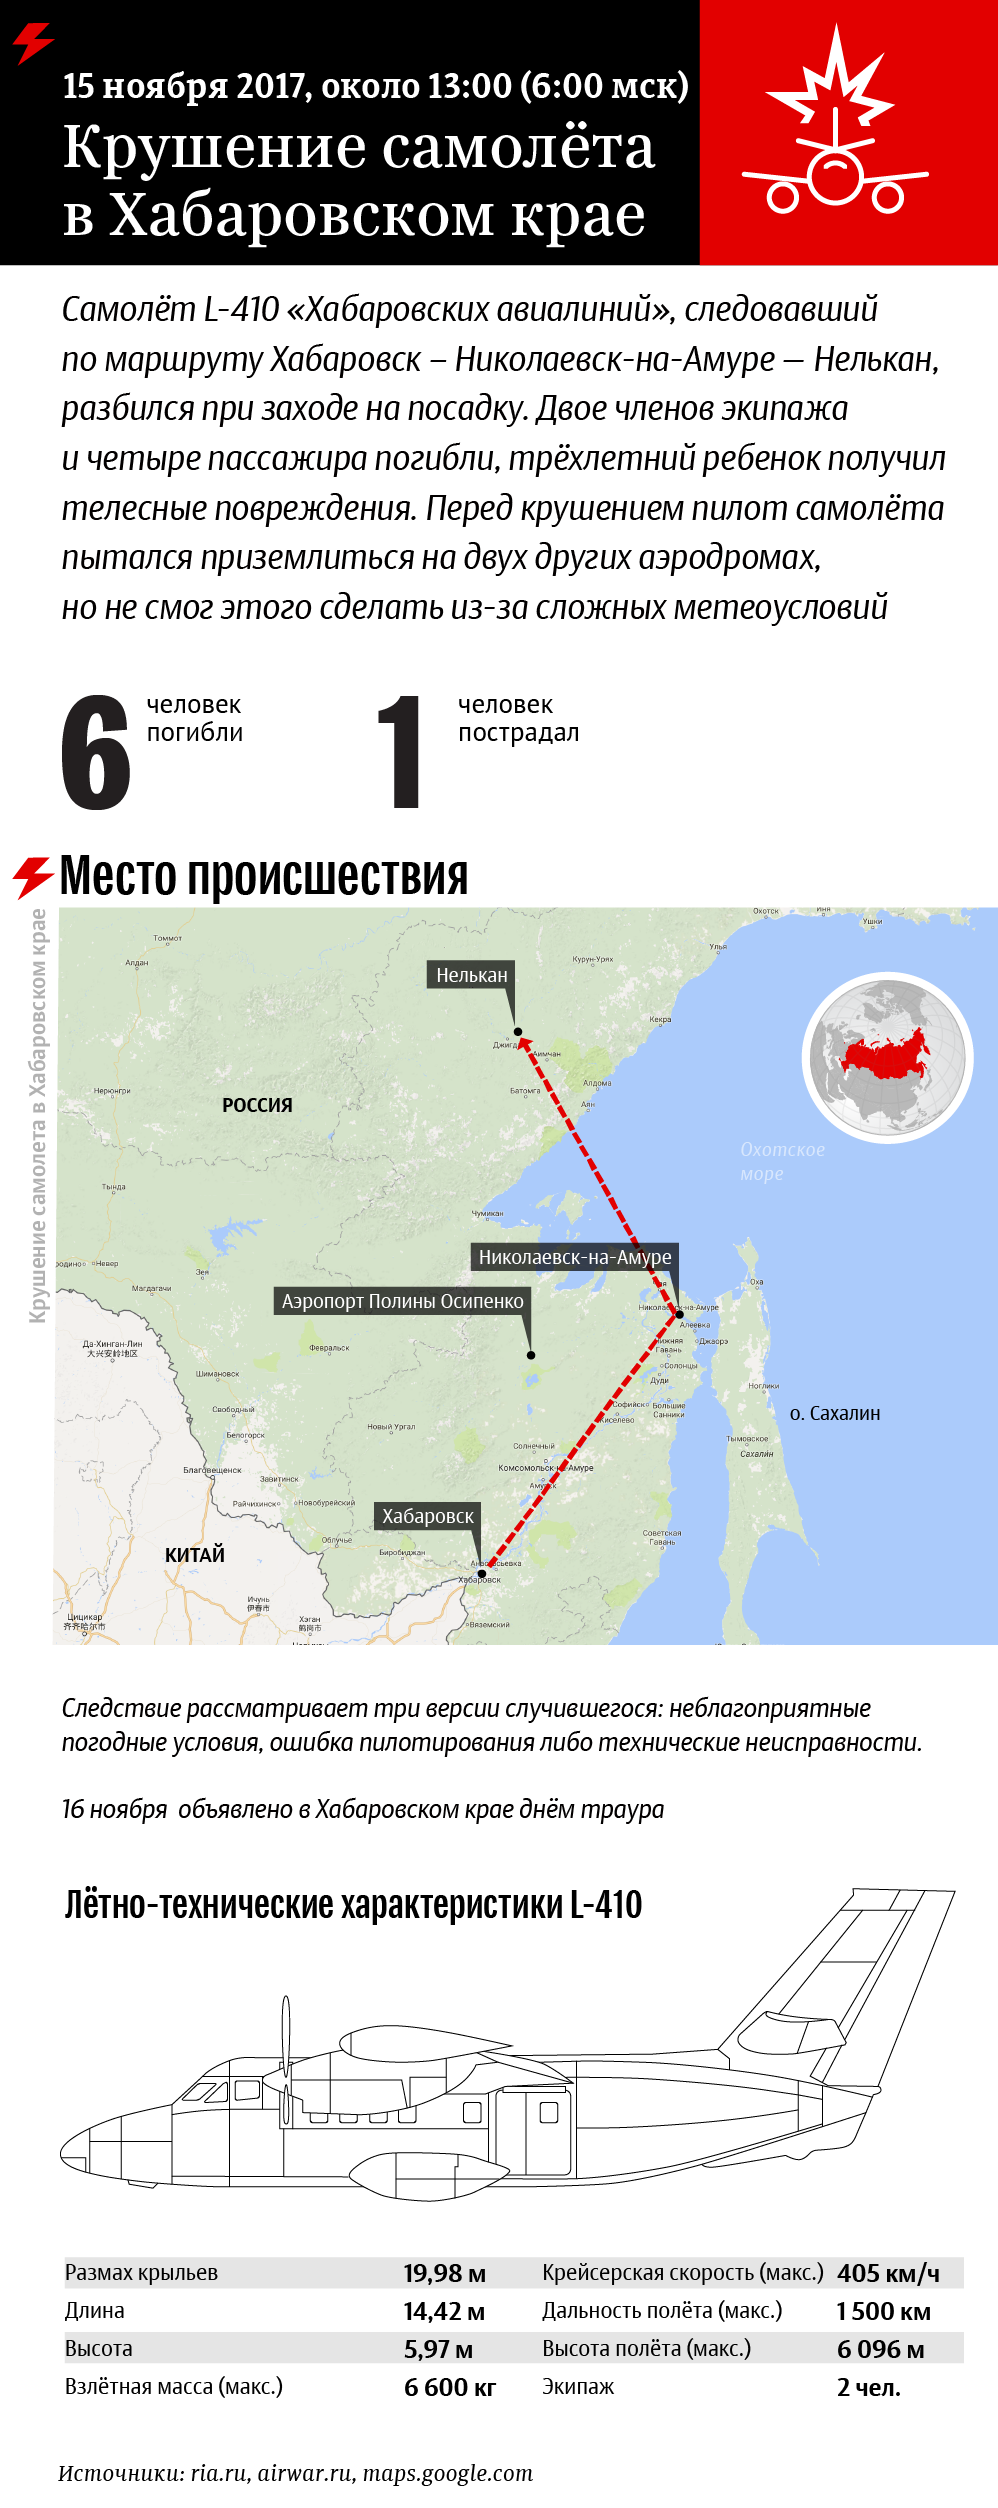 Крушение самолёта в Хабаровском крае